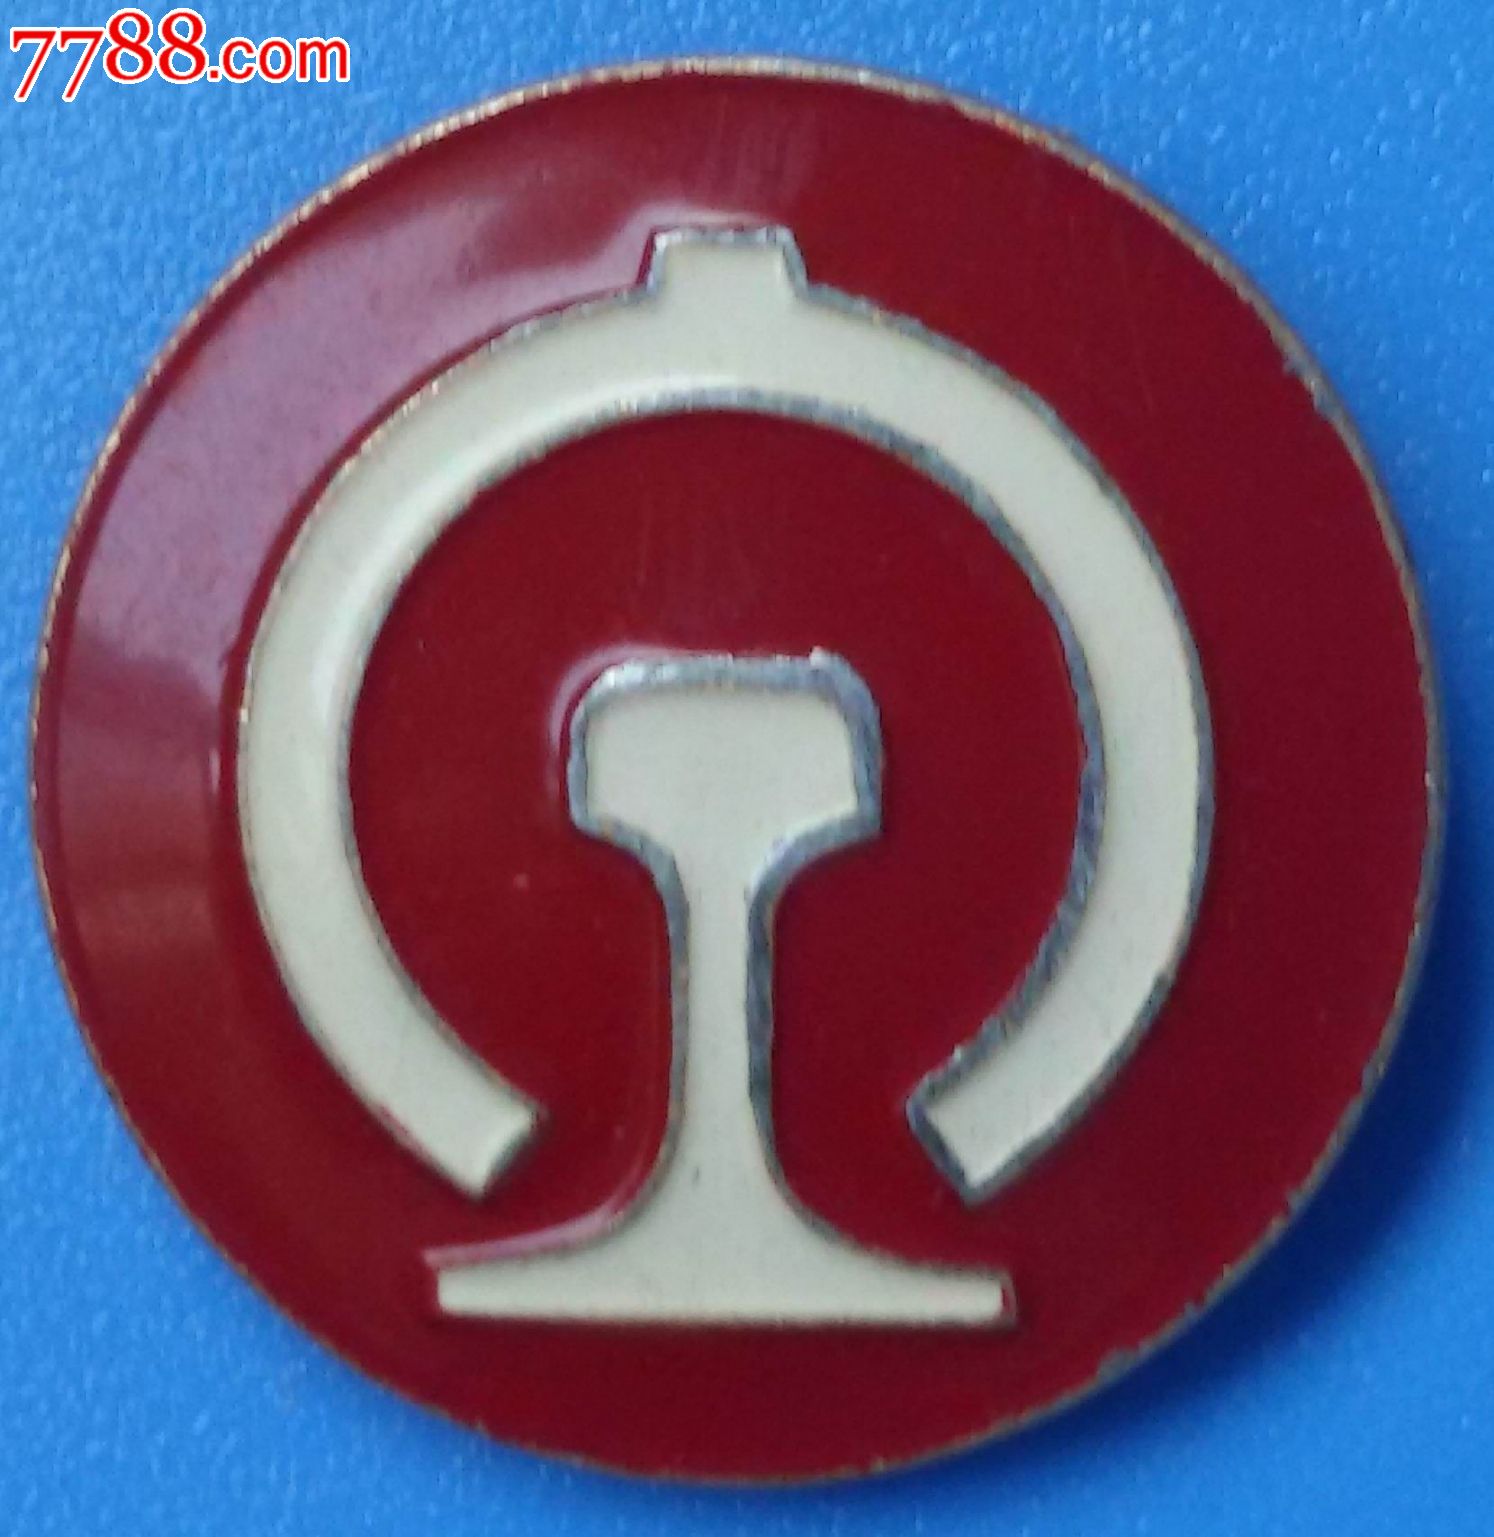 1982年铁道部制作铁路路徽